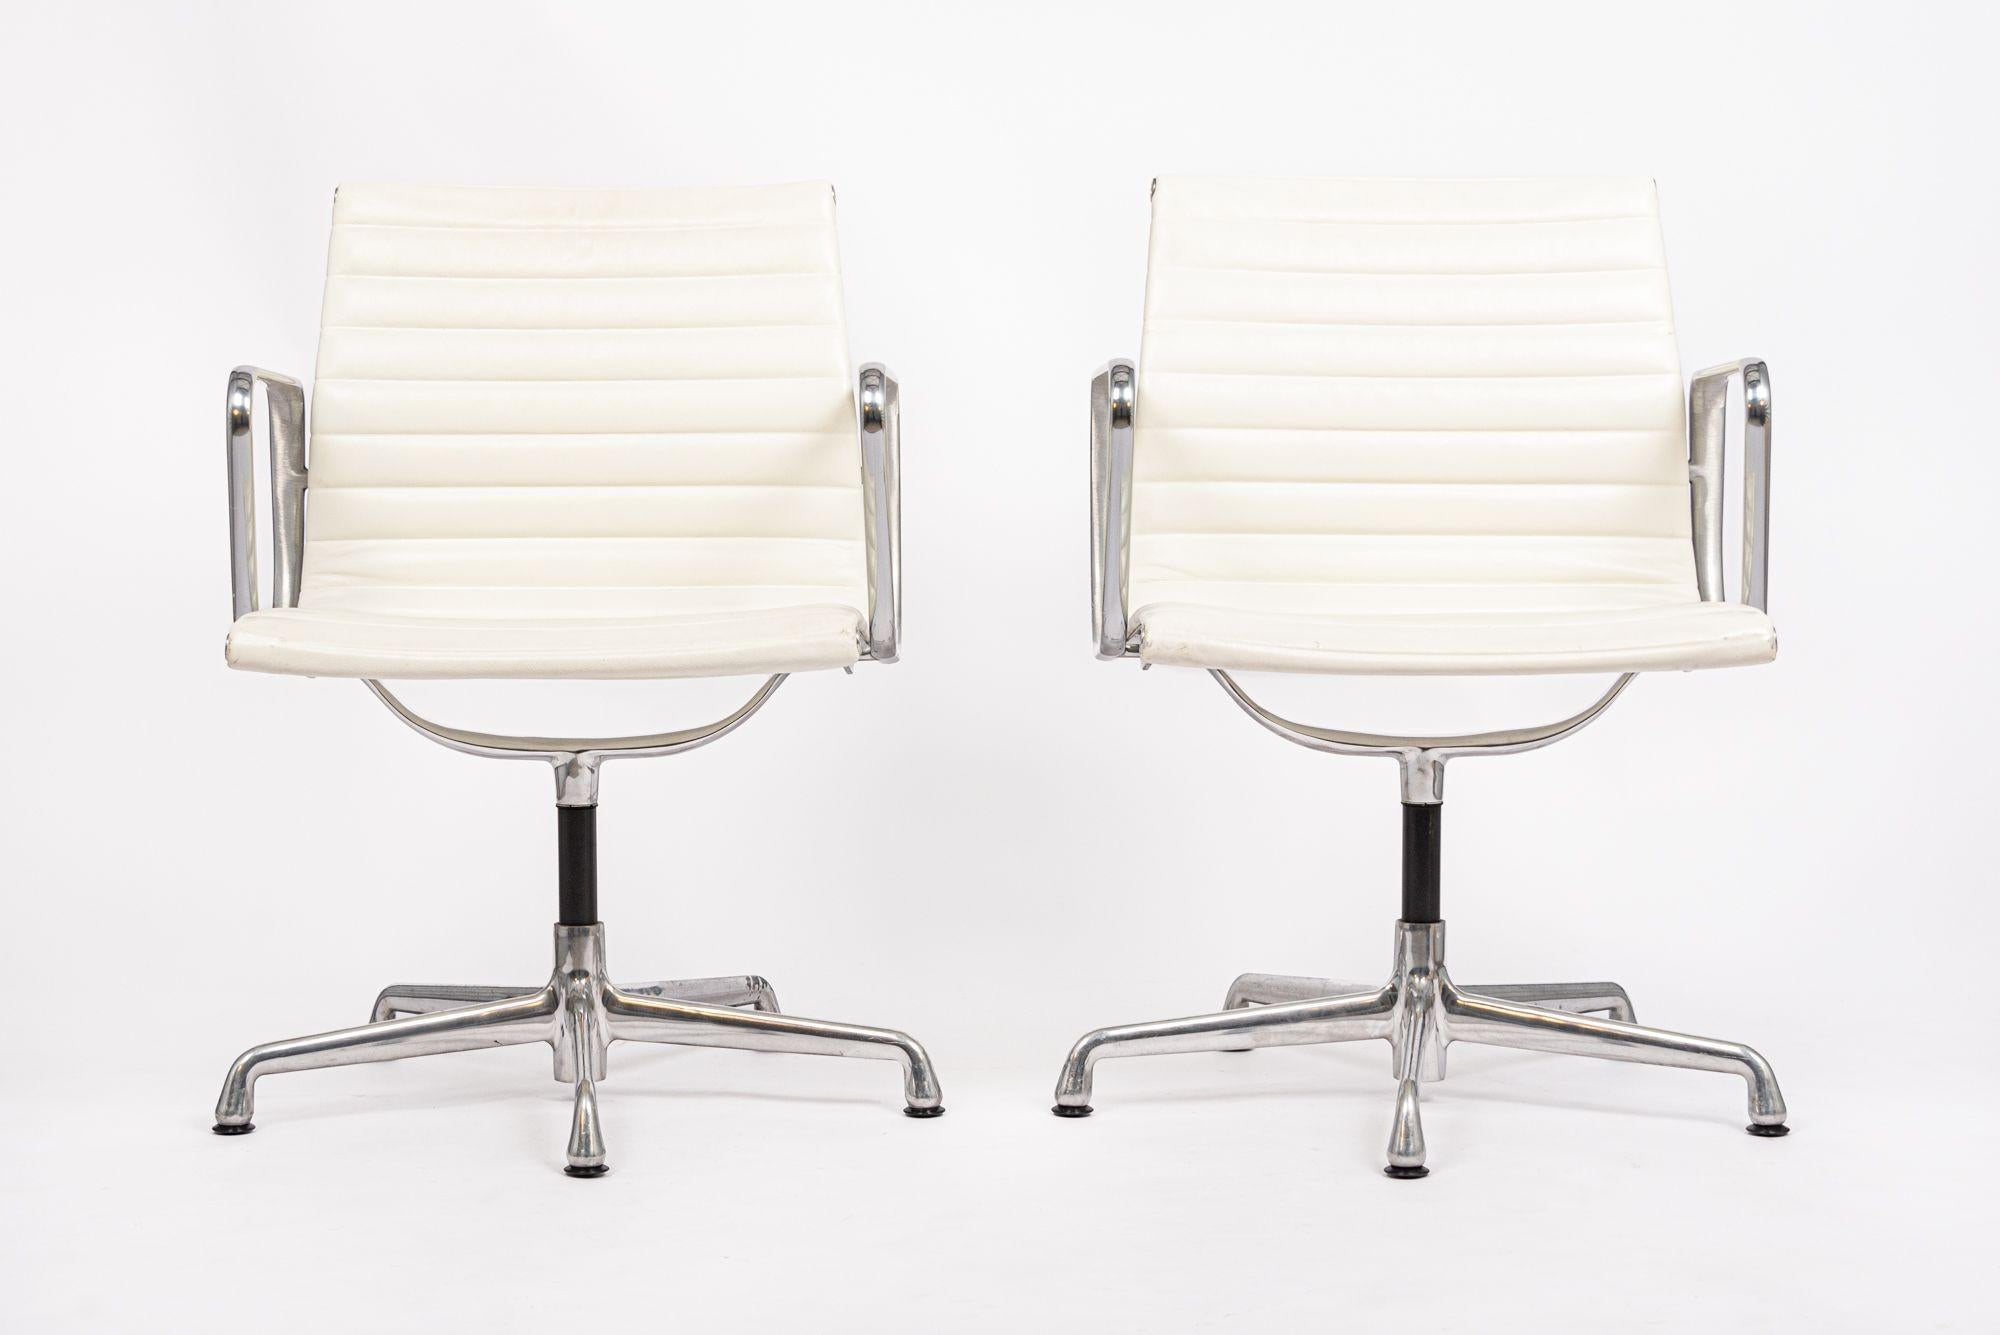 Der Bürostuhl Aluminum Group Management, entworfen von Charles & Ray Eames für Herman Miller, gehört zur Eames Aluminum Group Collection'S. Diese unverwechselbaren Stühle sind das Ergebnis der Experimente der Eames mit Aluminium, das nach dem